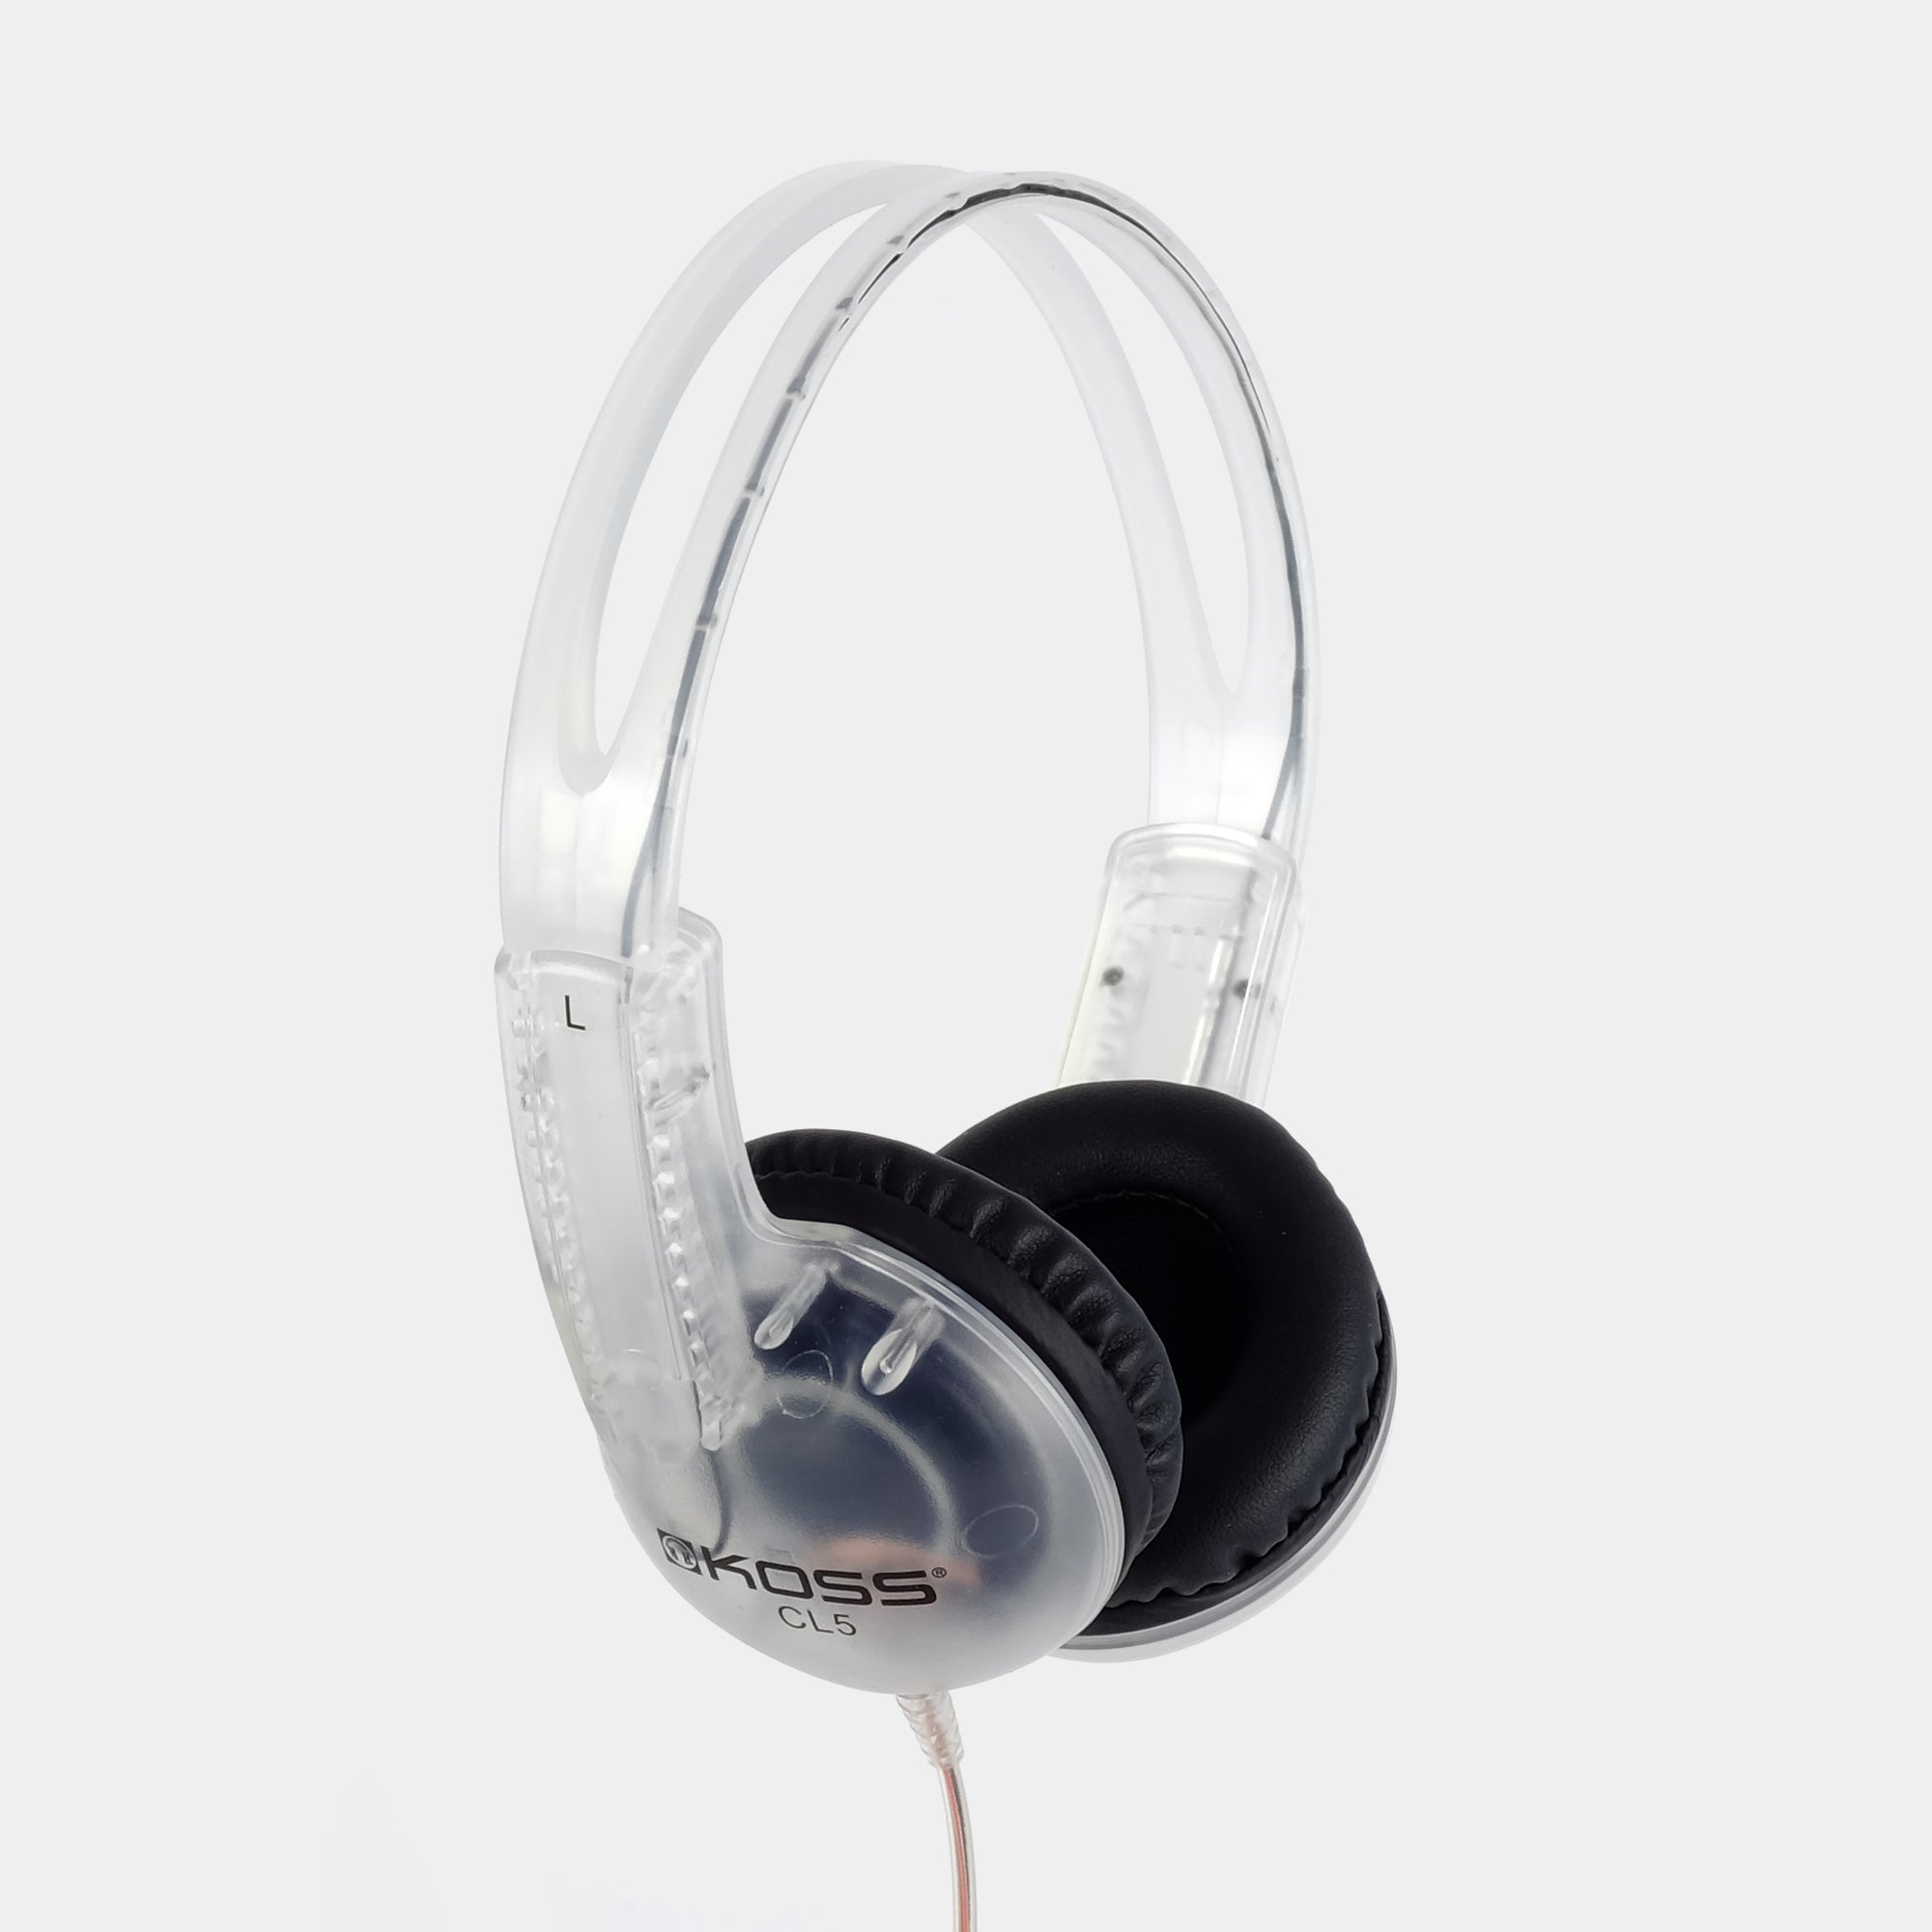 Koss CL/5 Clear On-Ear Headphones